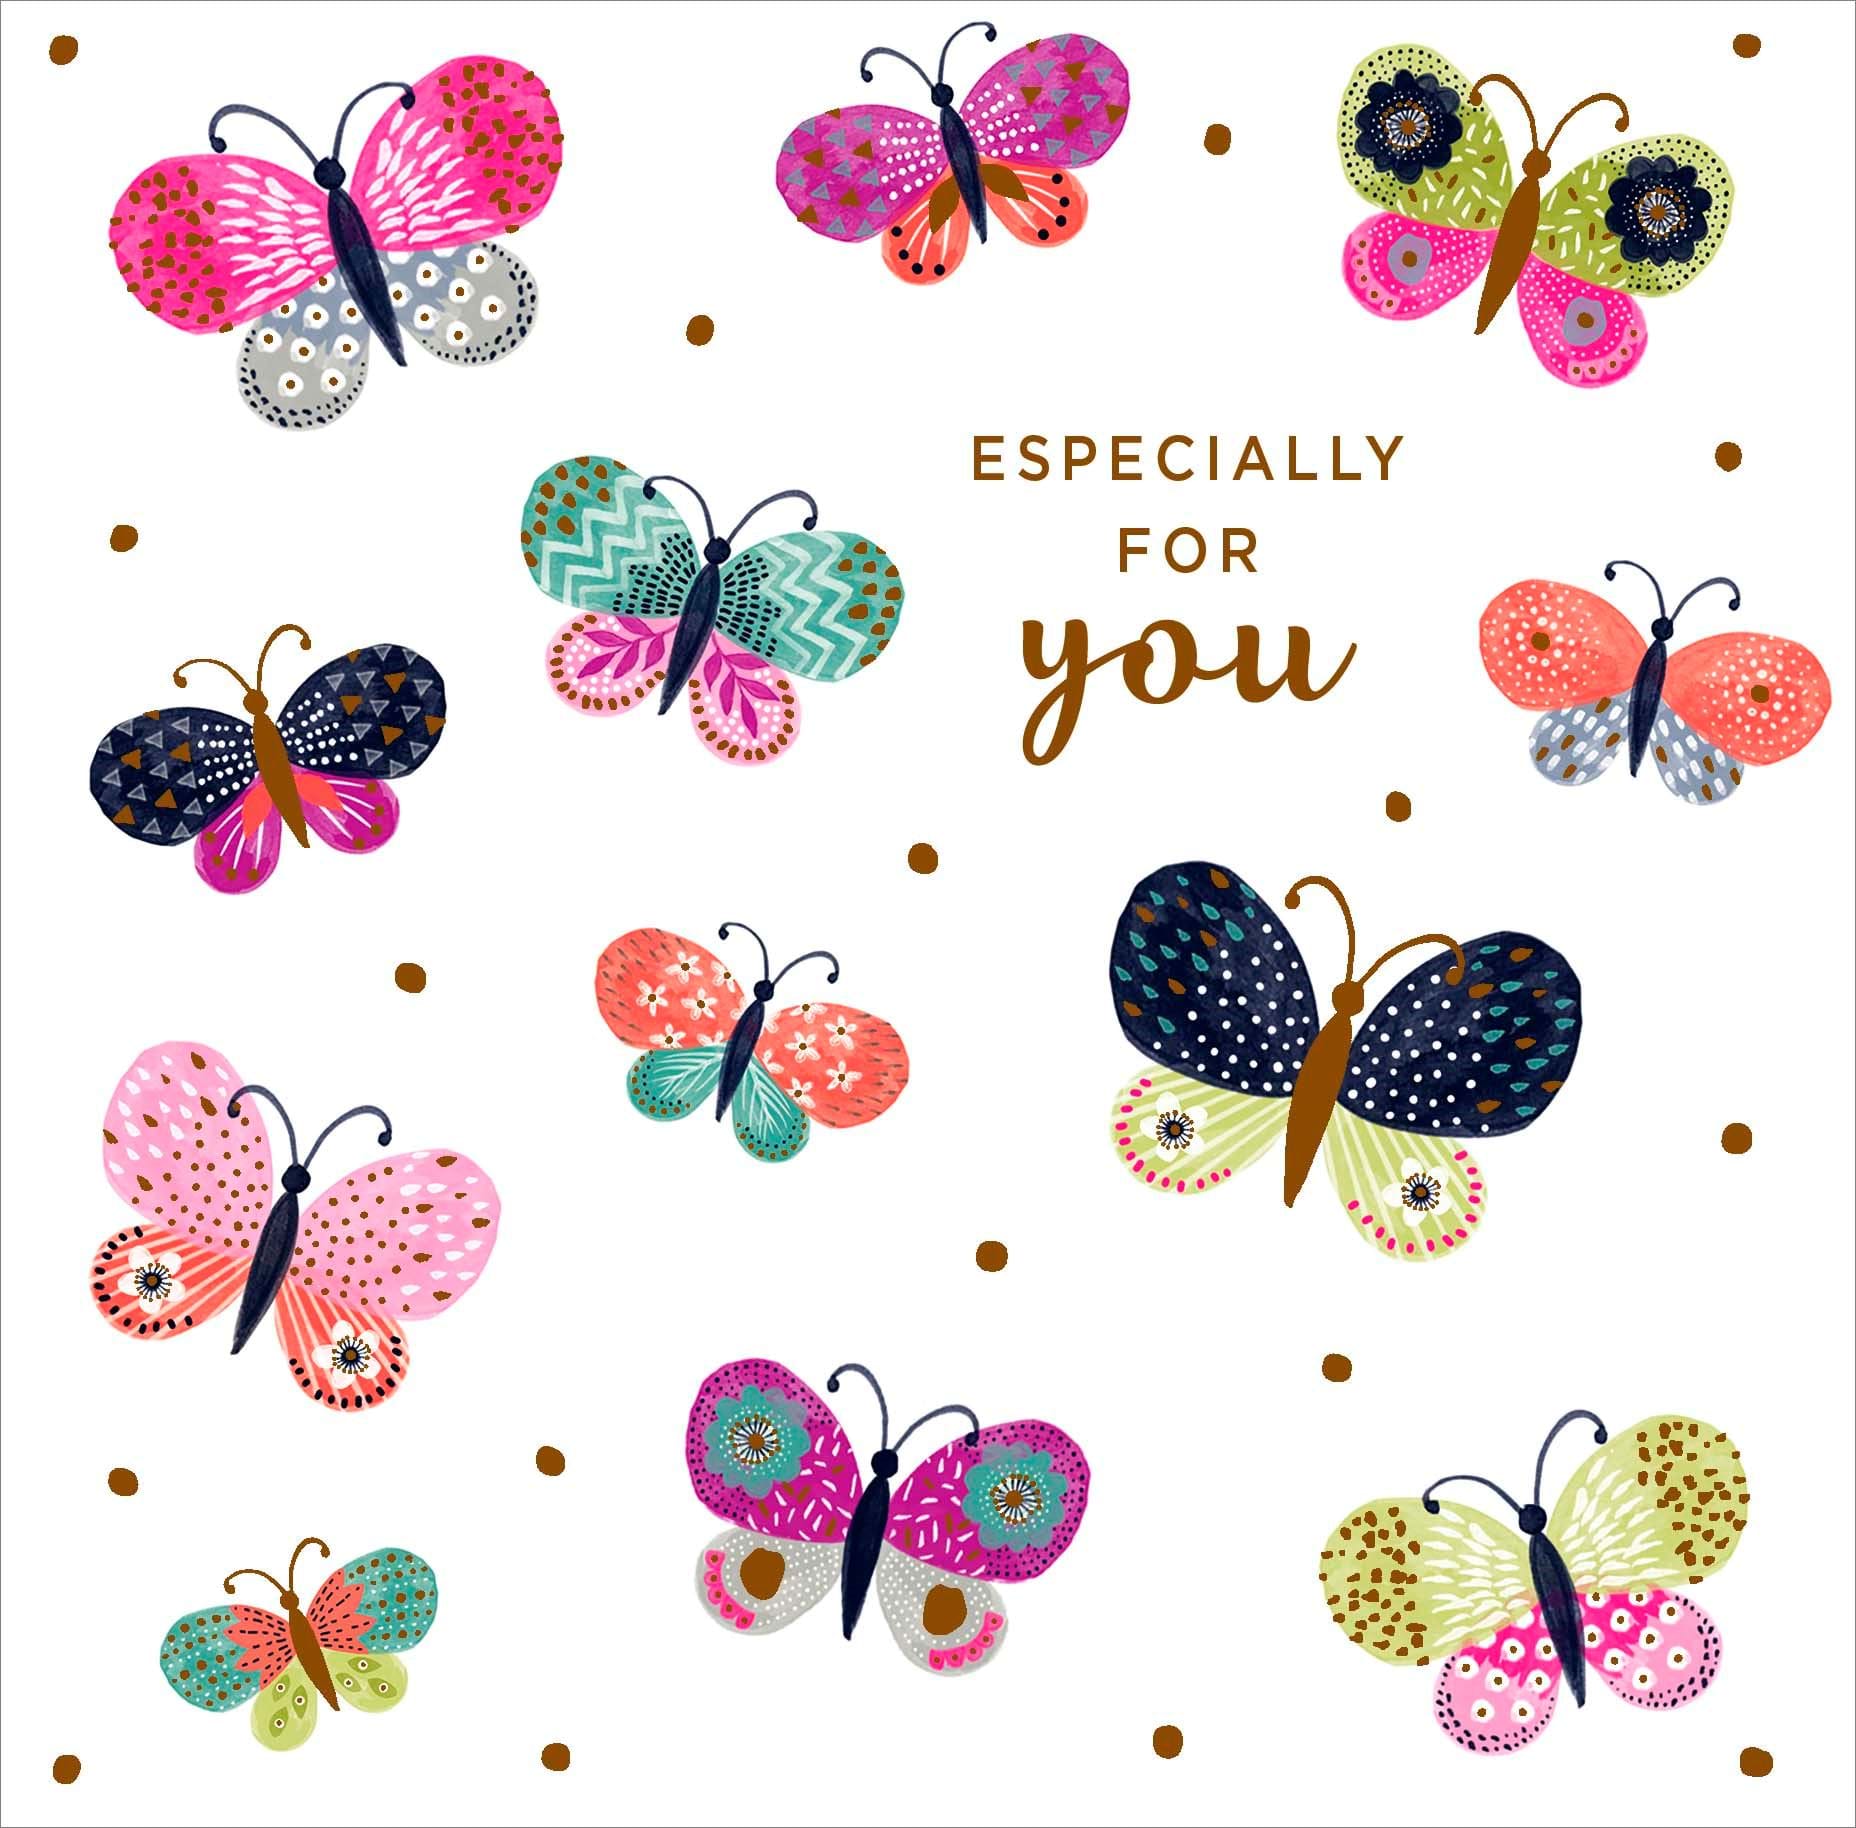 Butterflies Birthday Card